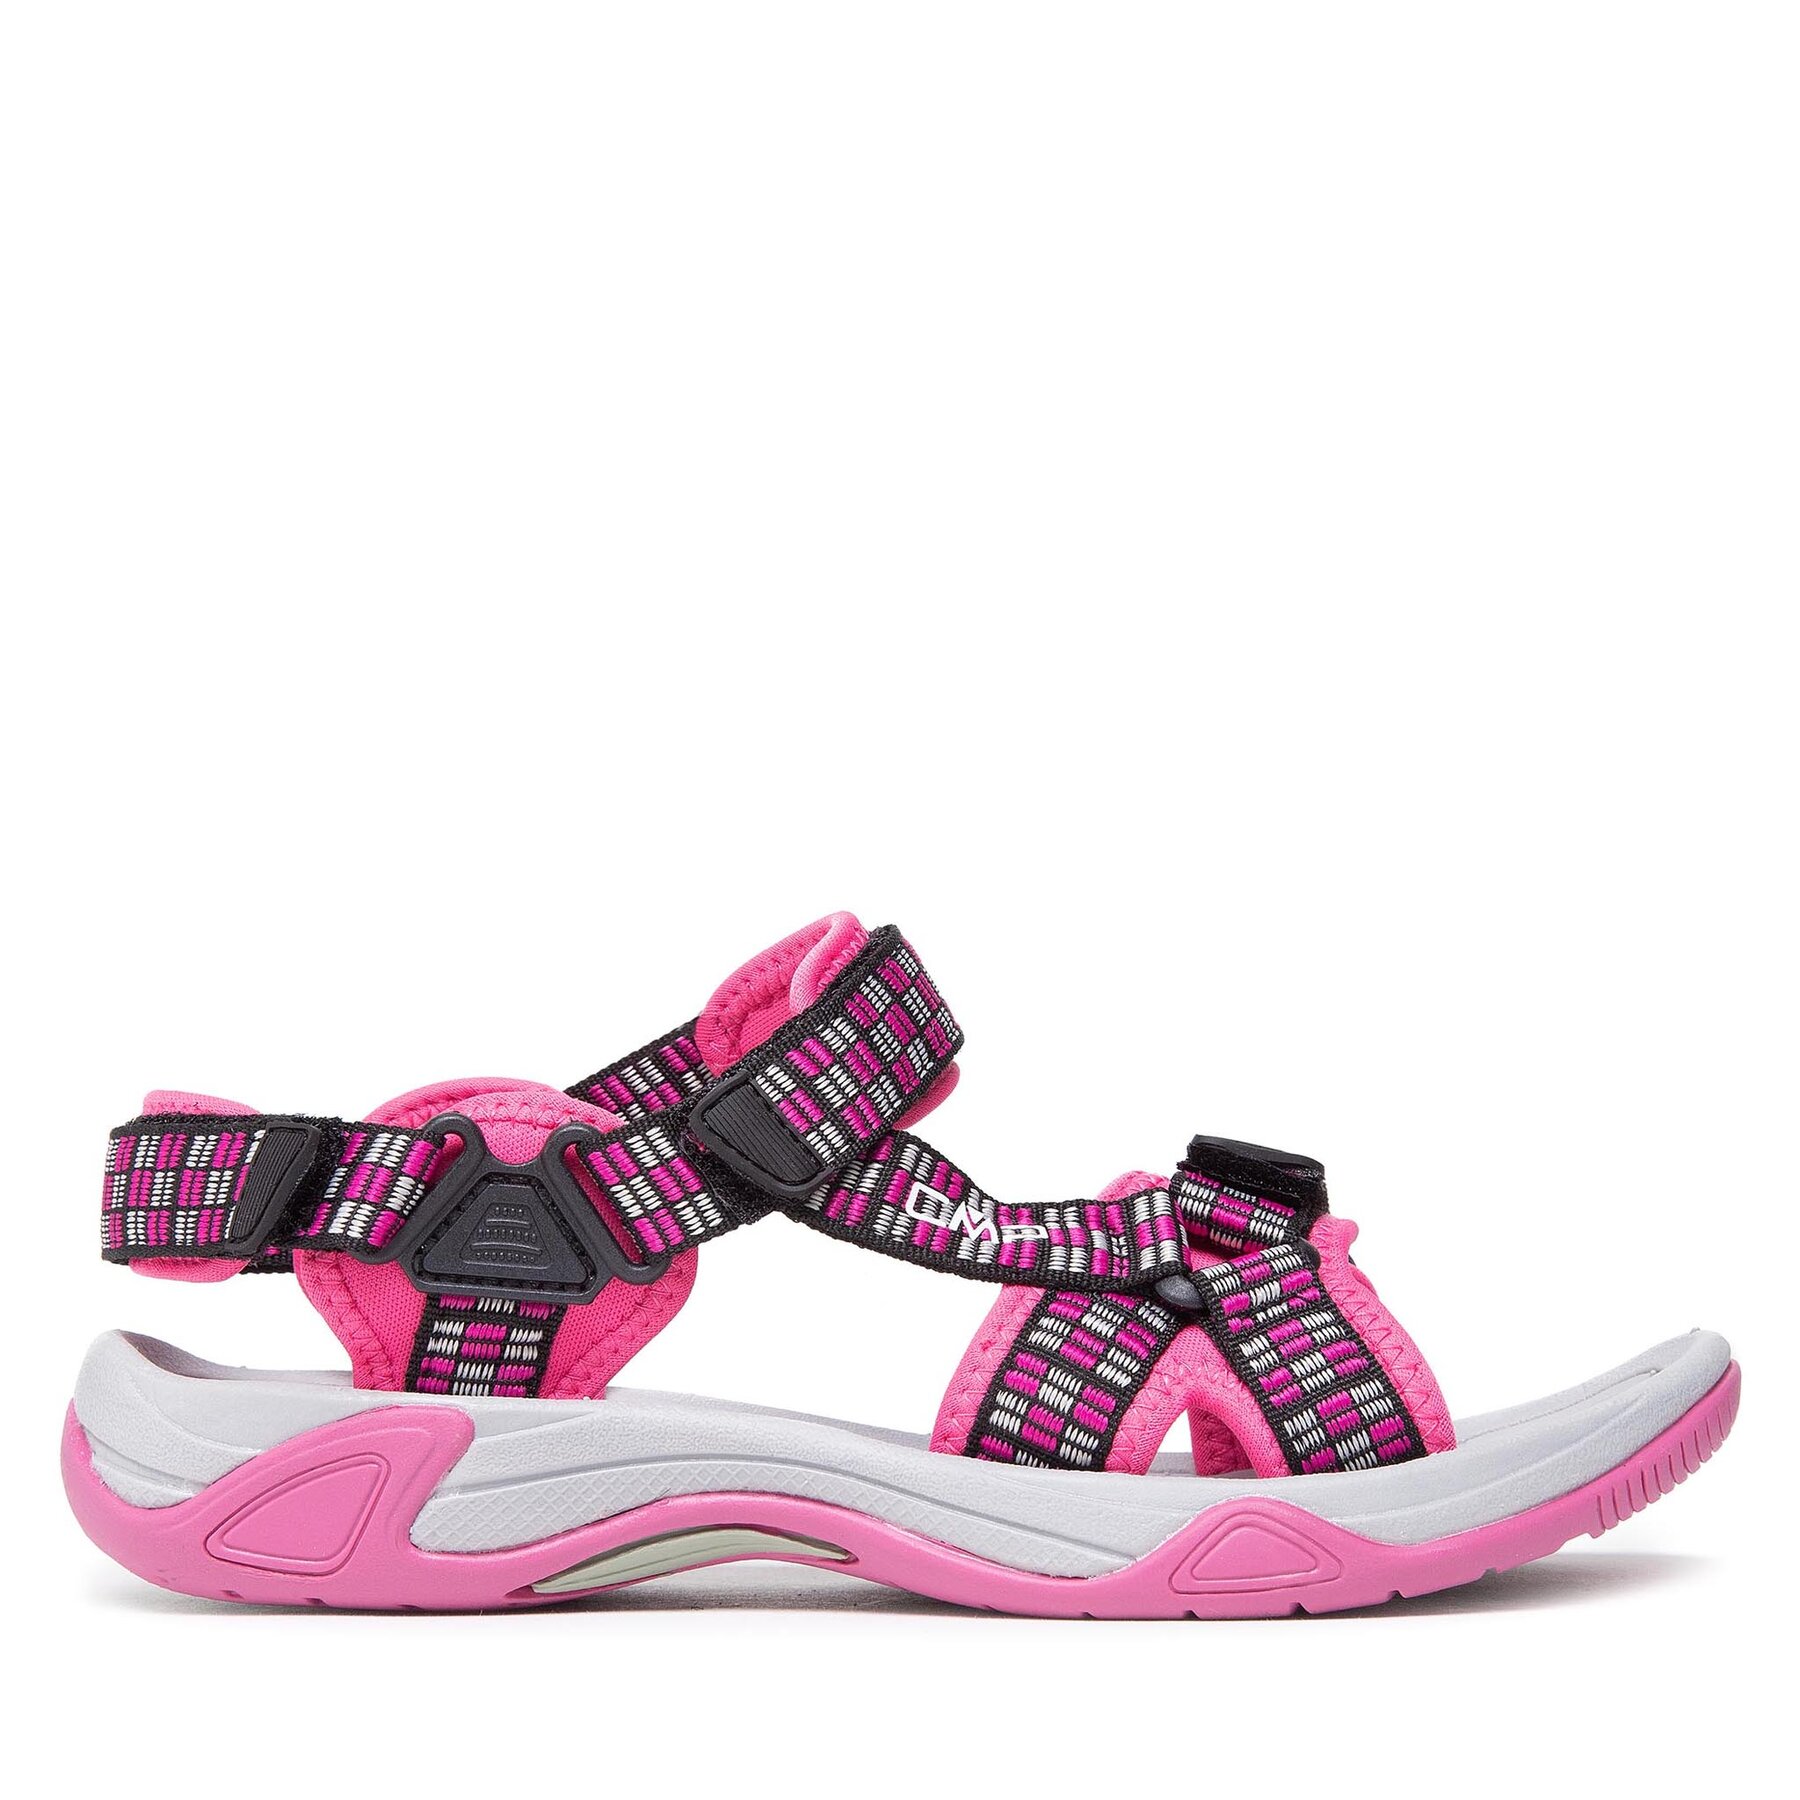 Comprar en oferta CMP Hamal Kids Hiking Sandals hot pink